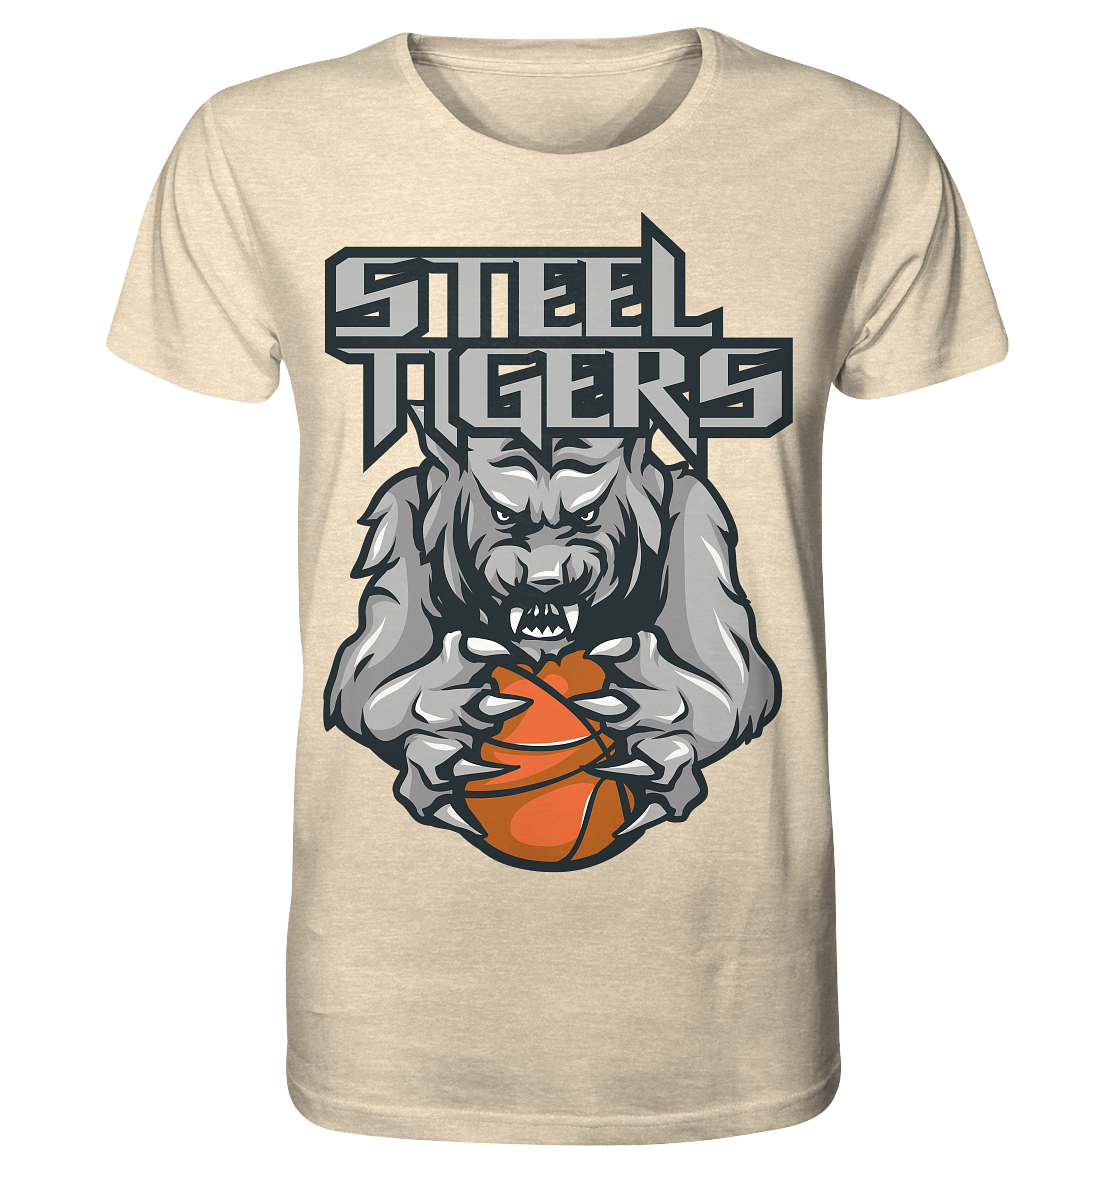 Steel Tigers - Organic Shirt